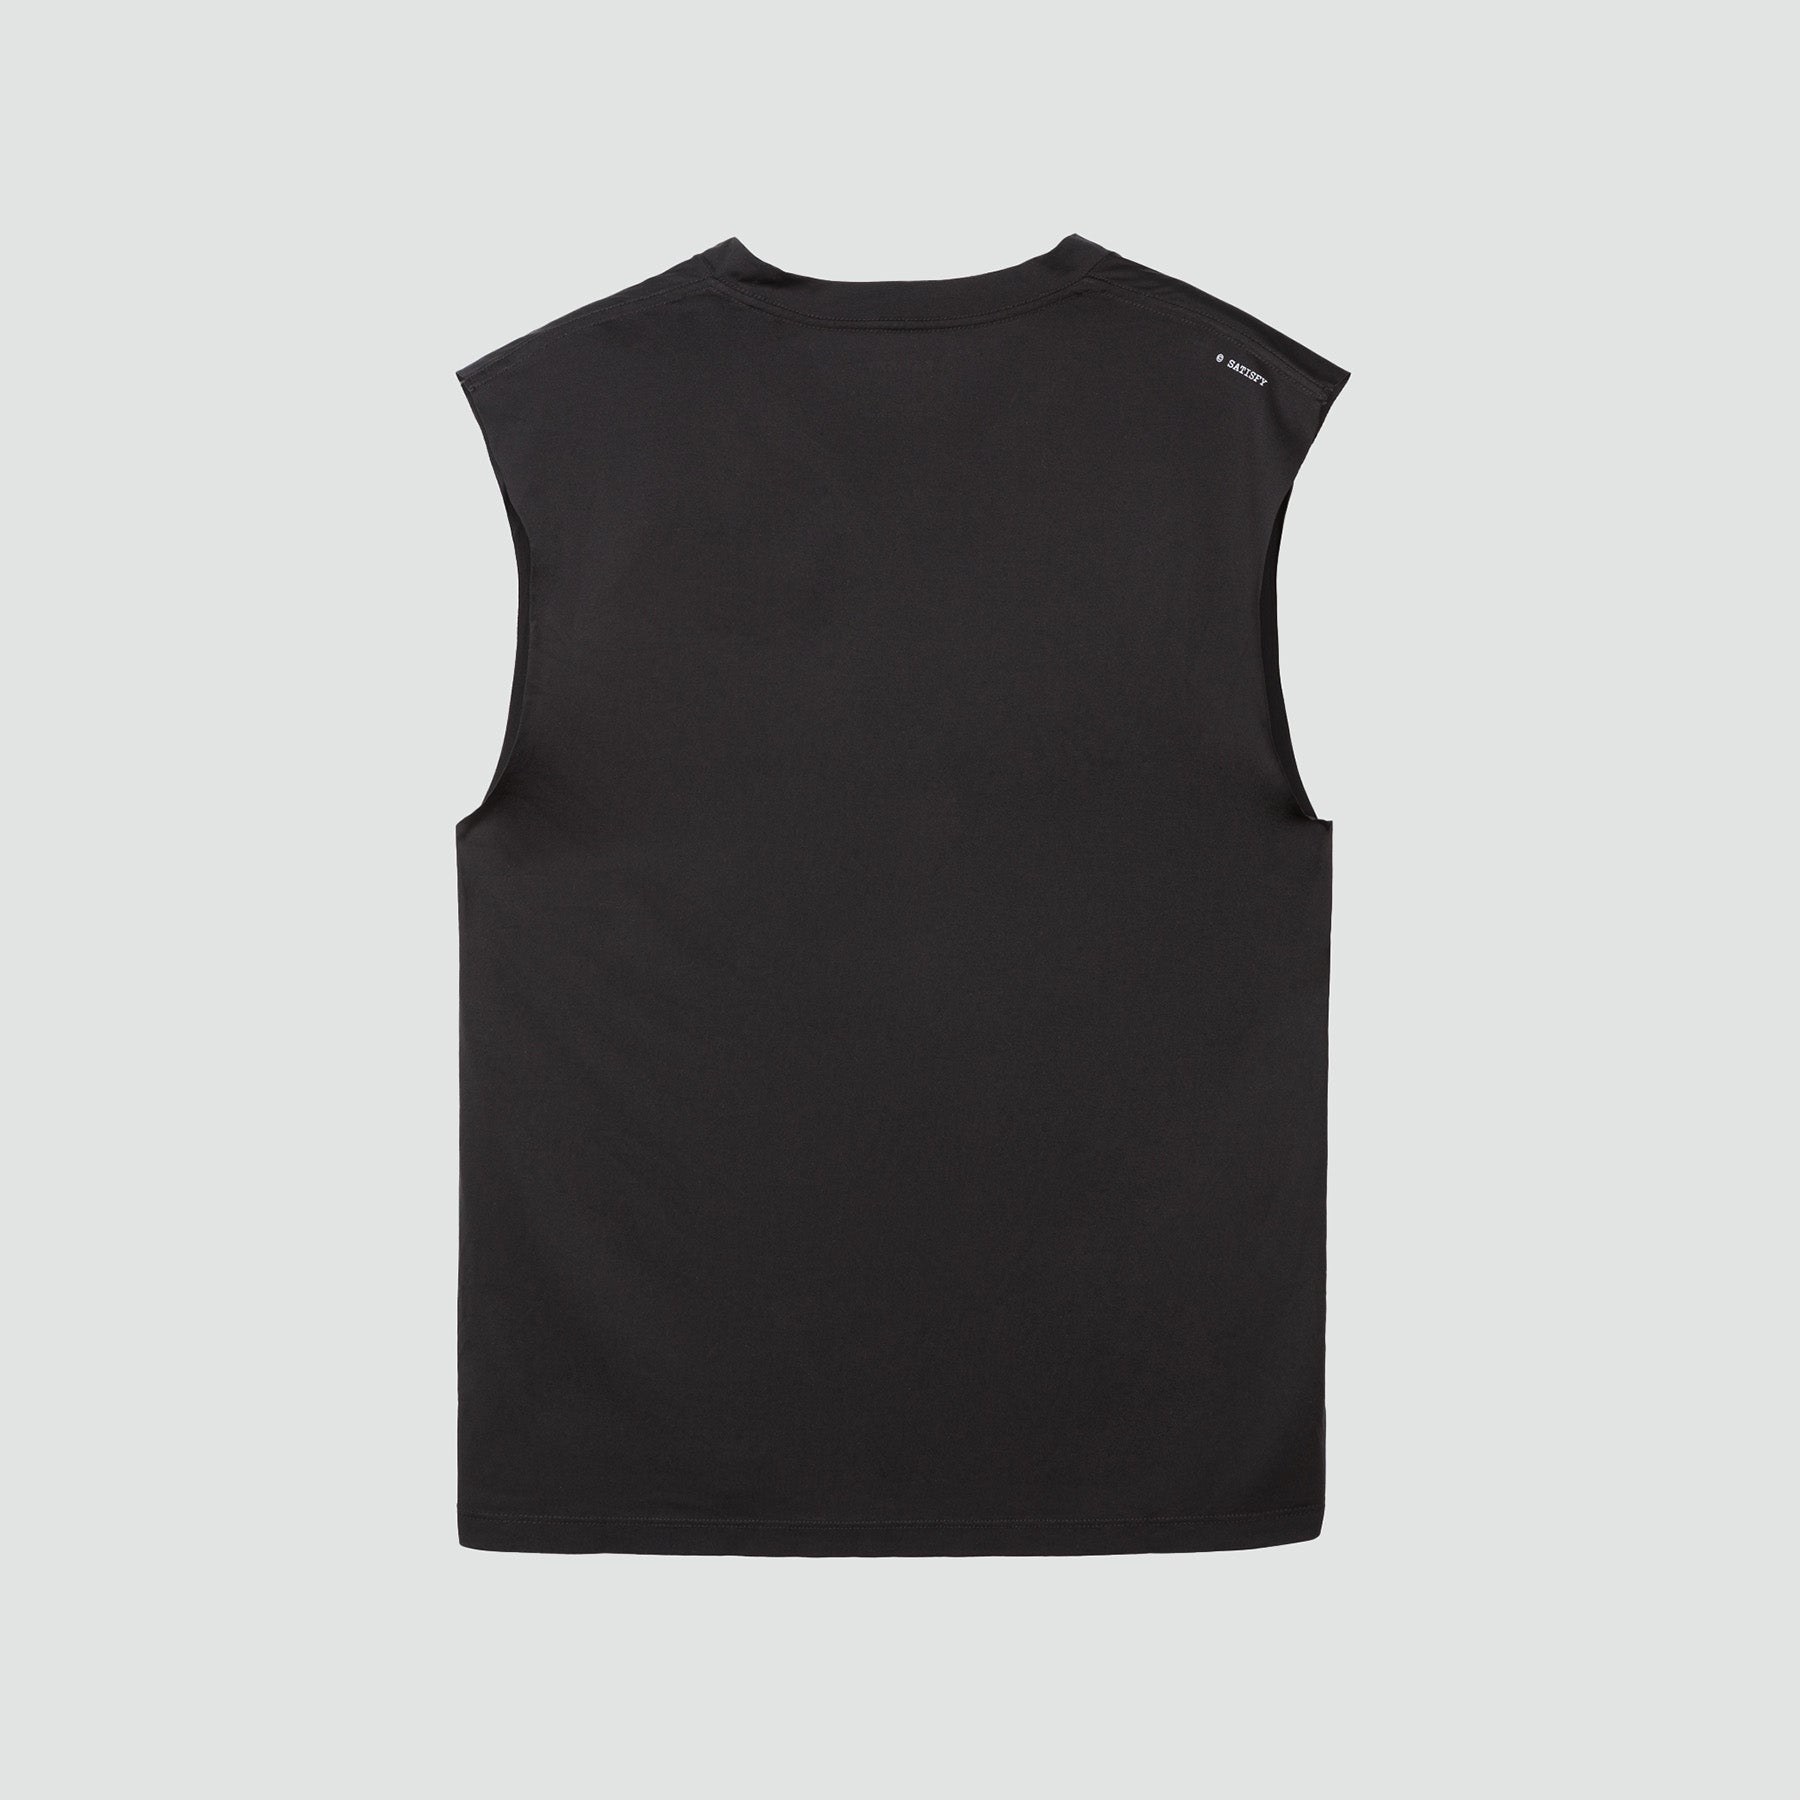 T-shirt musculaire AuraLite™ - Noir